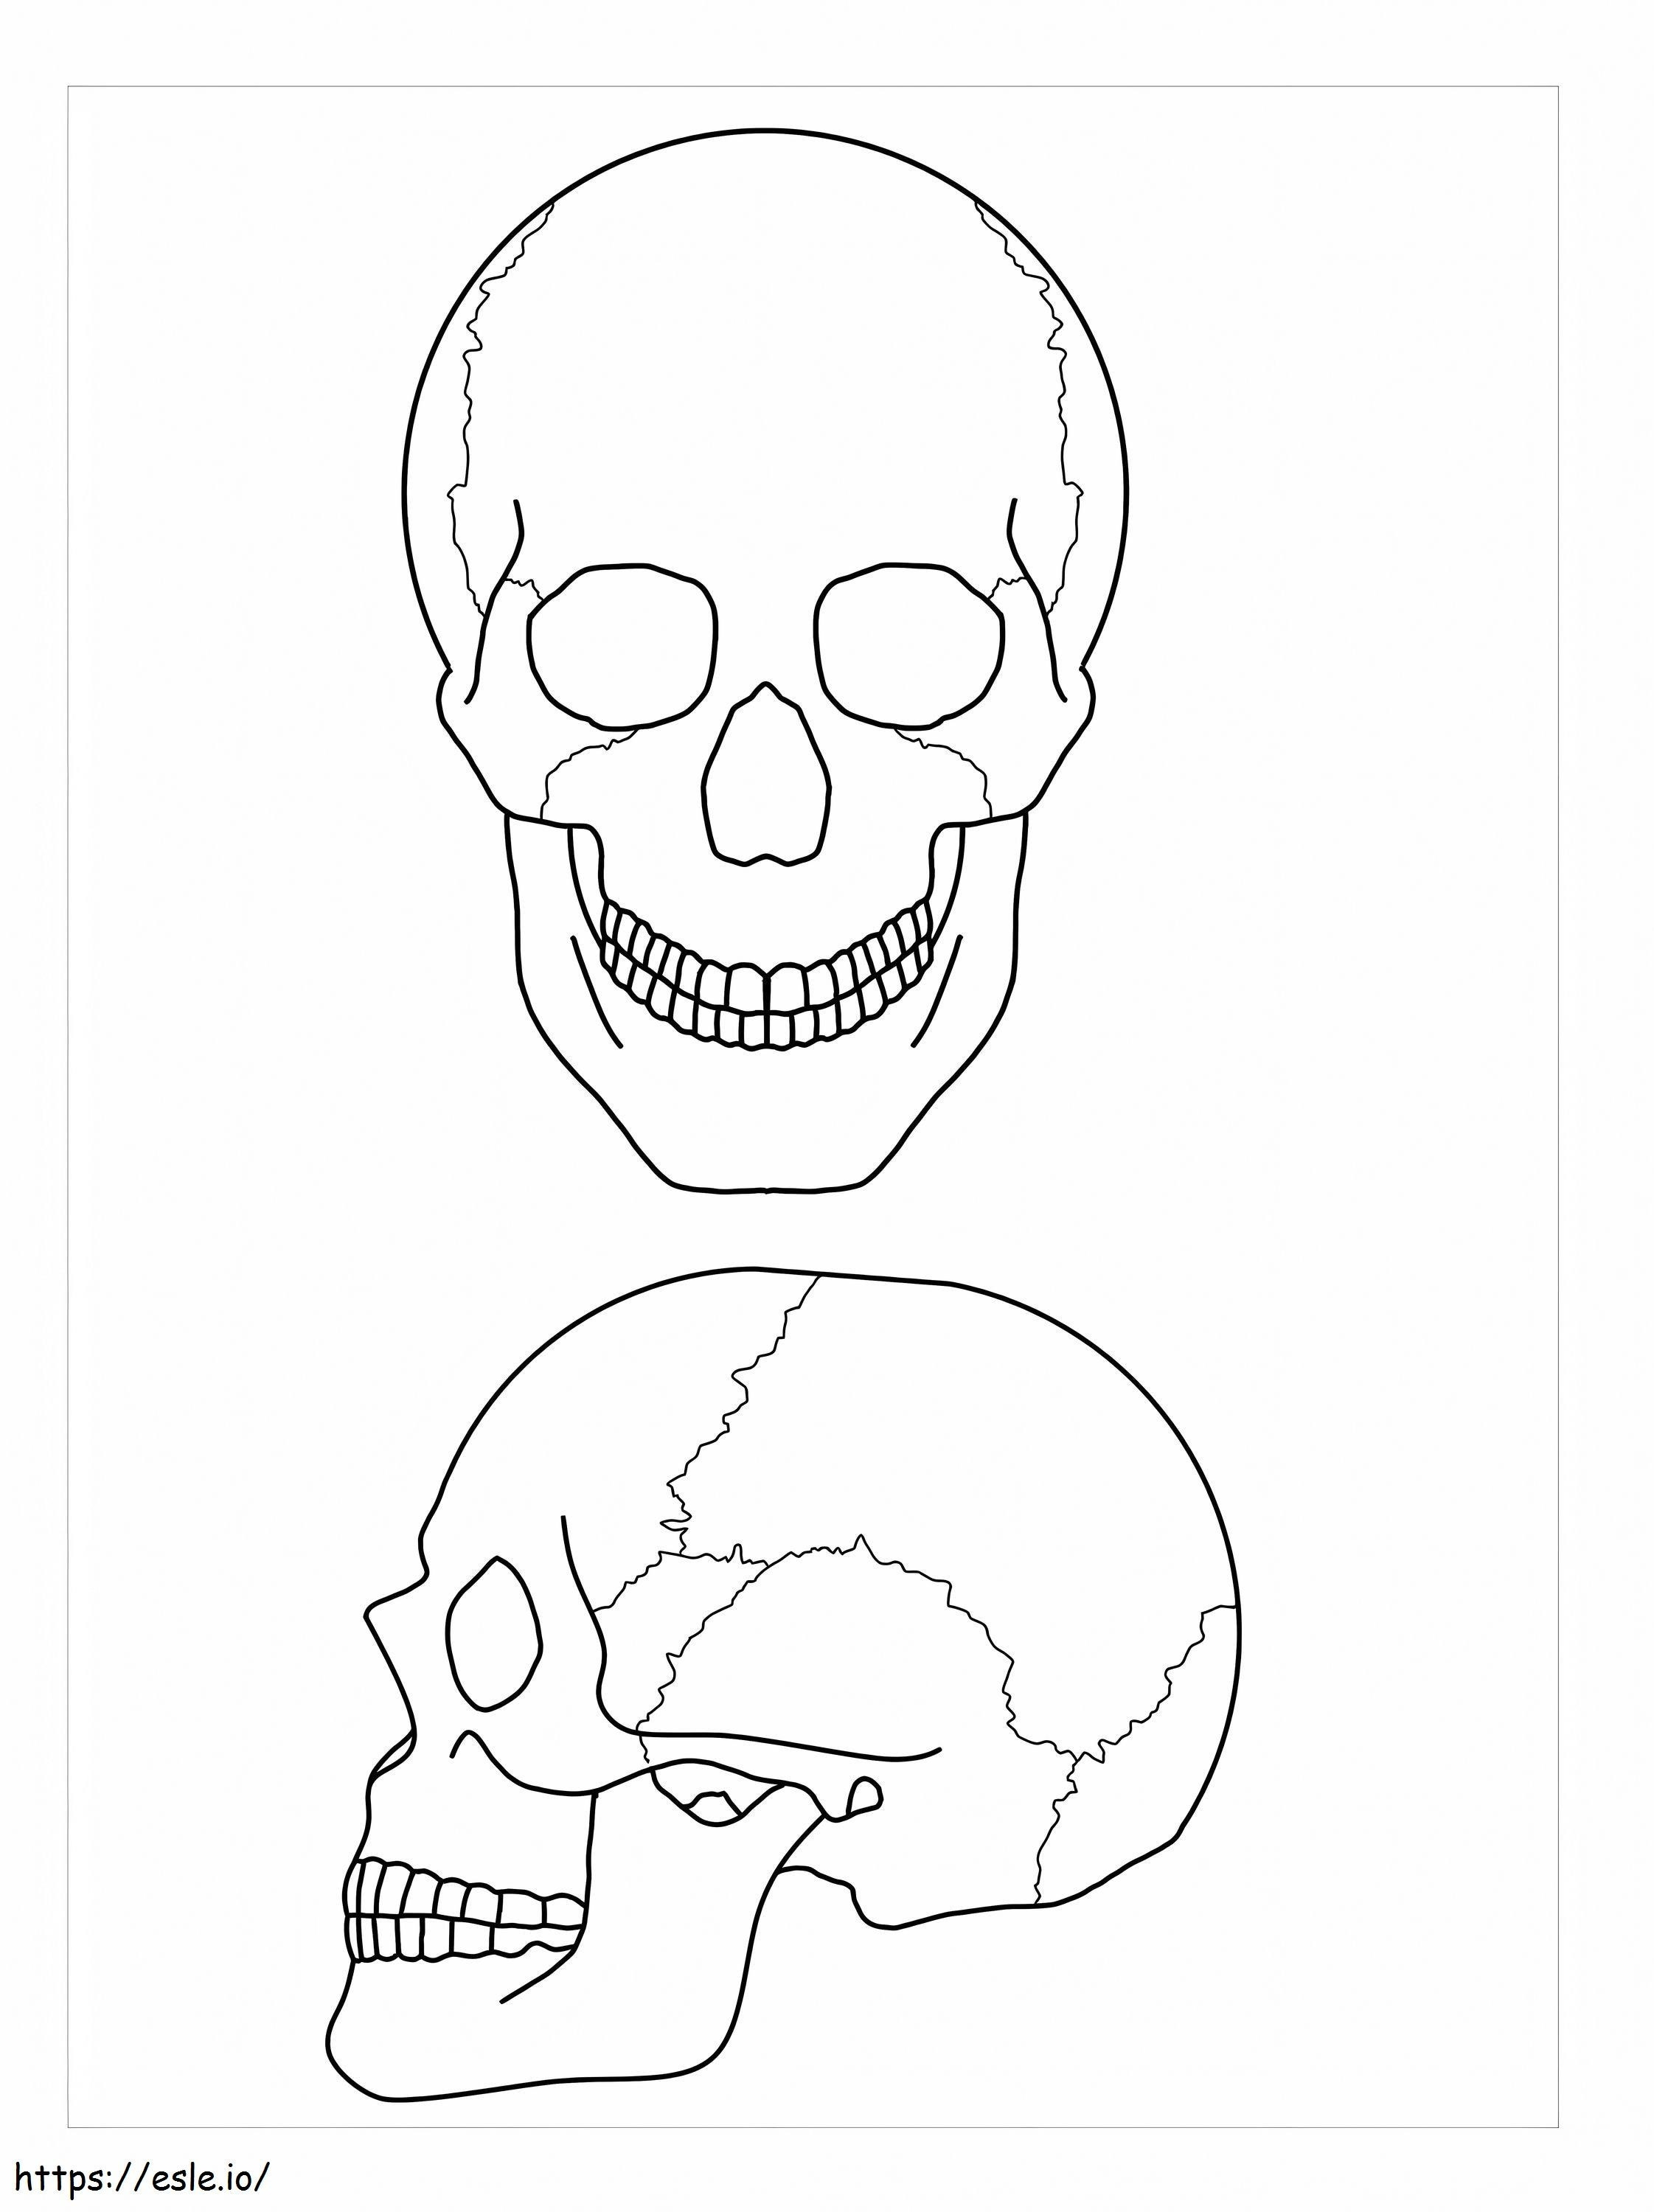 İki Kafatasının Anatomisi boyama